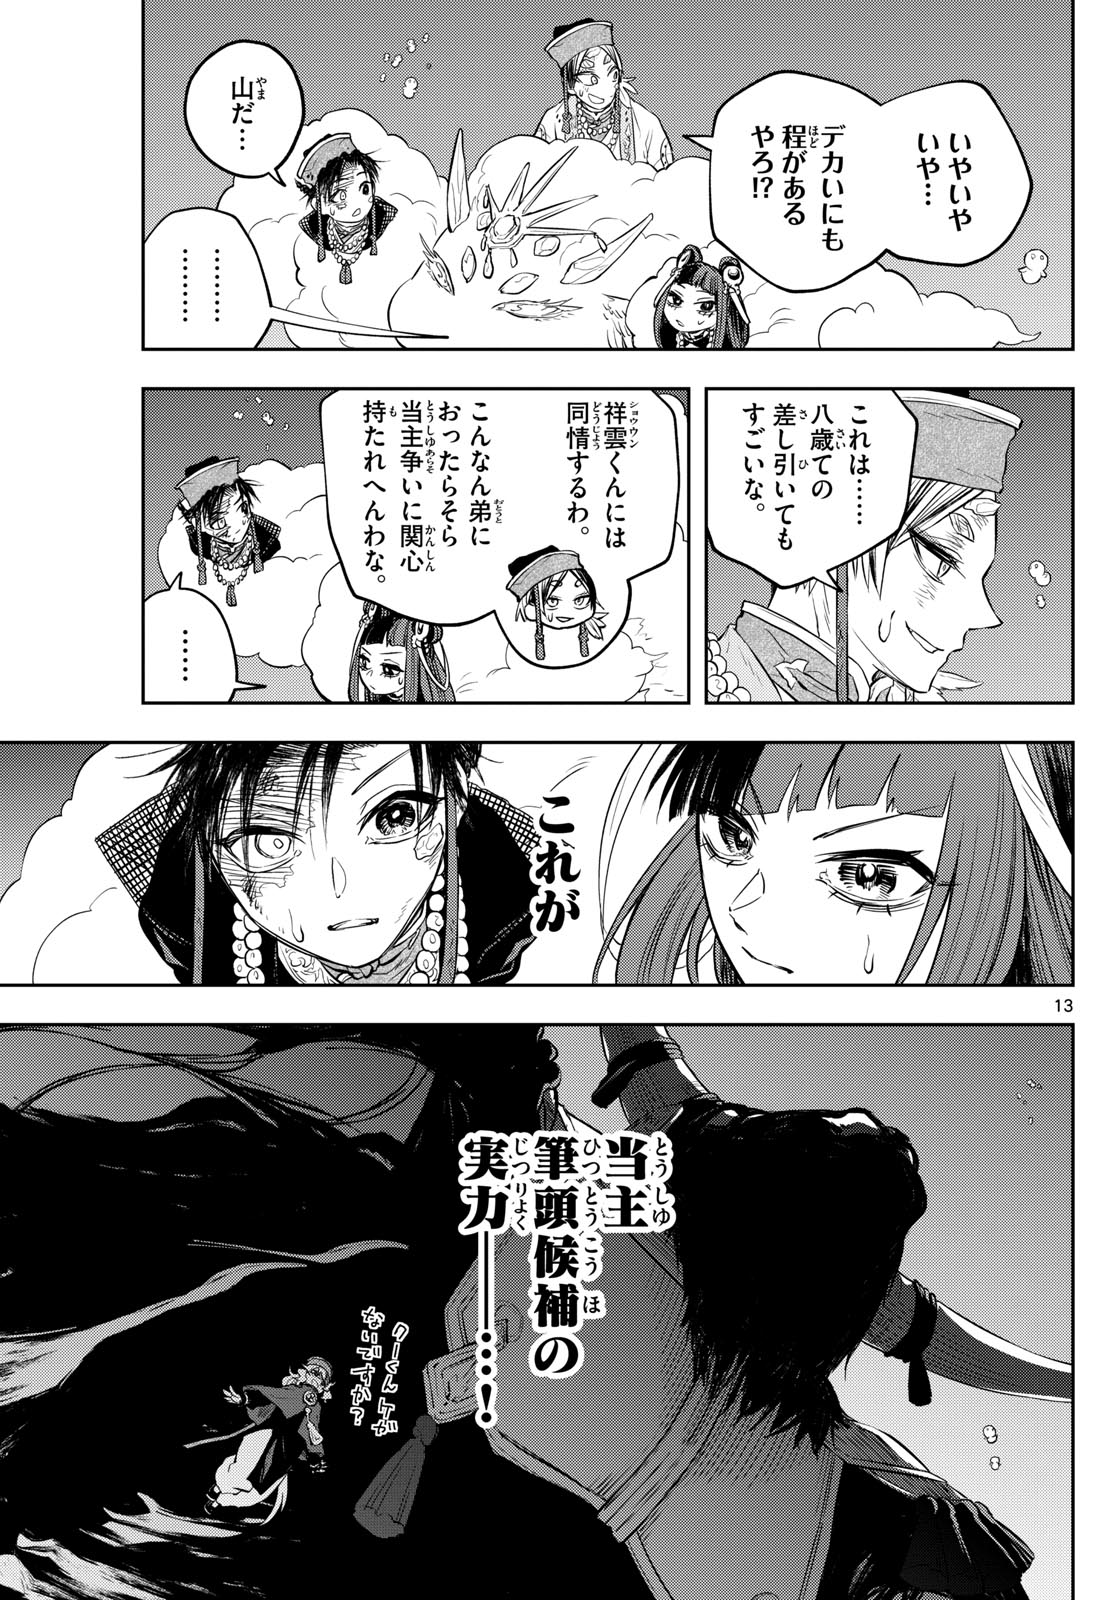 Akatsuki Jihen - Chapter 36 - Page 13